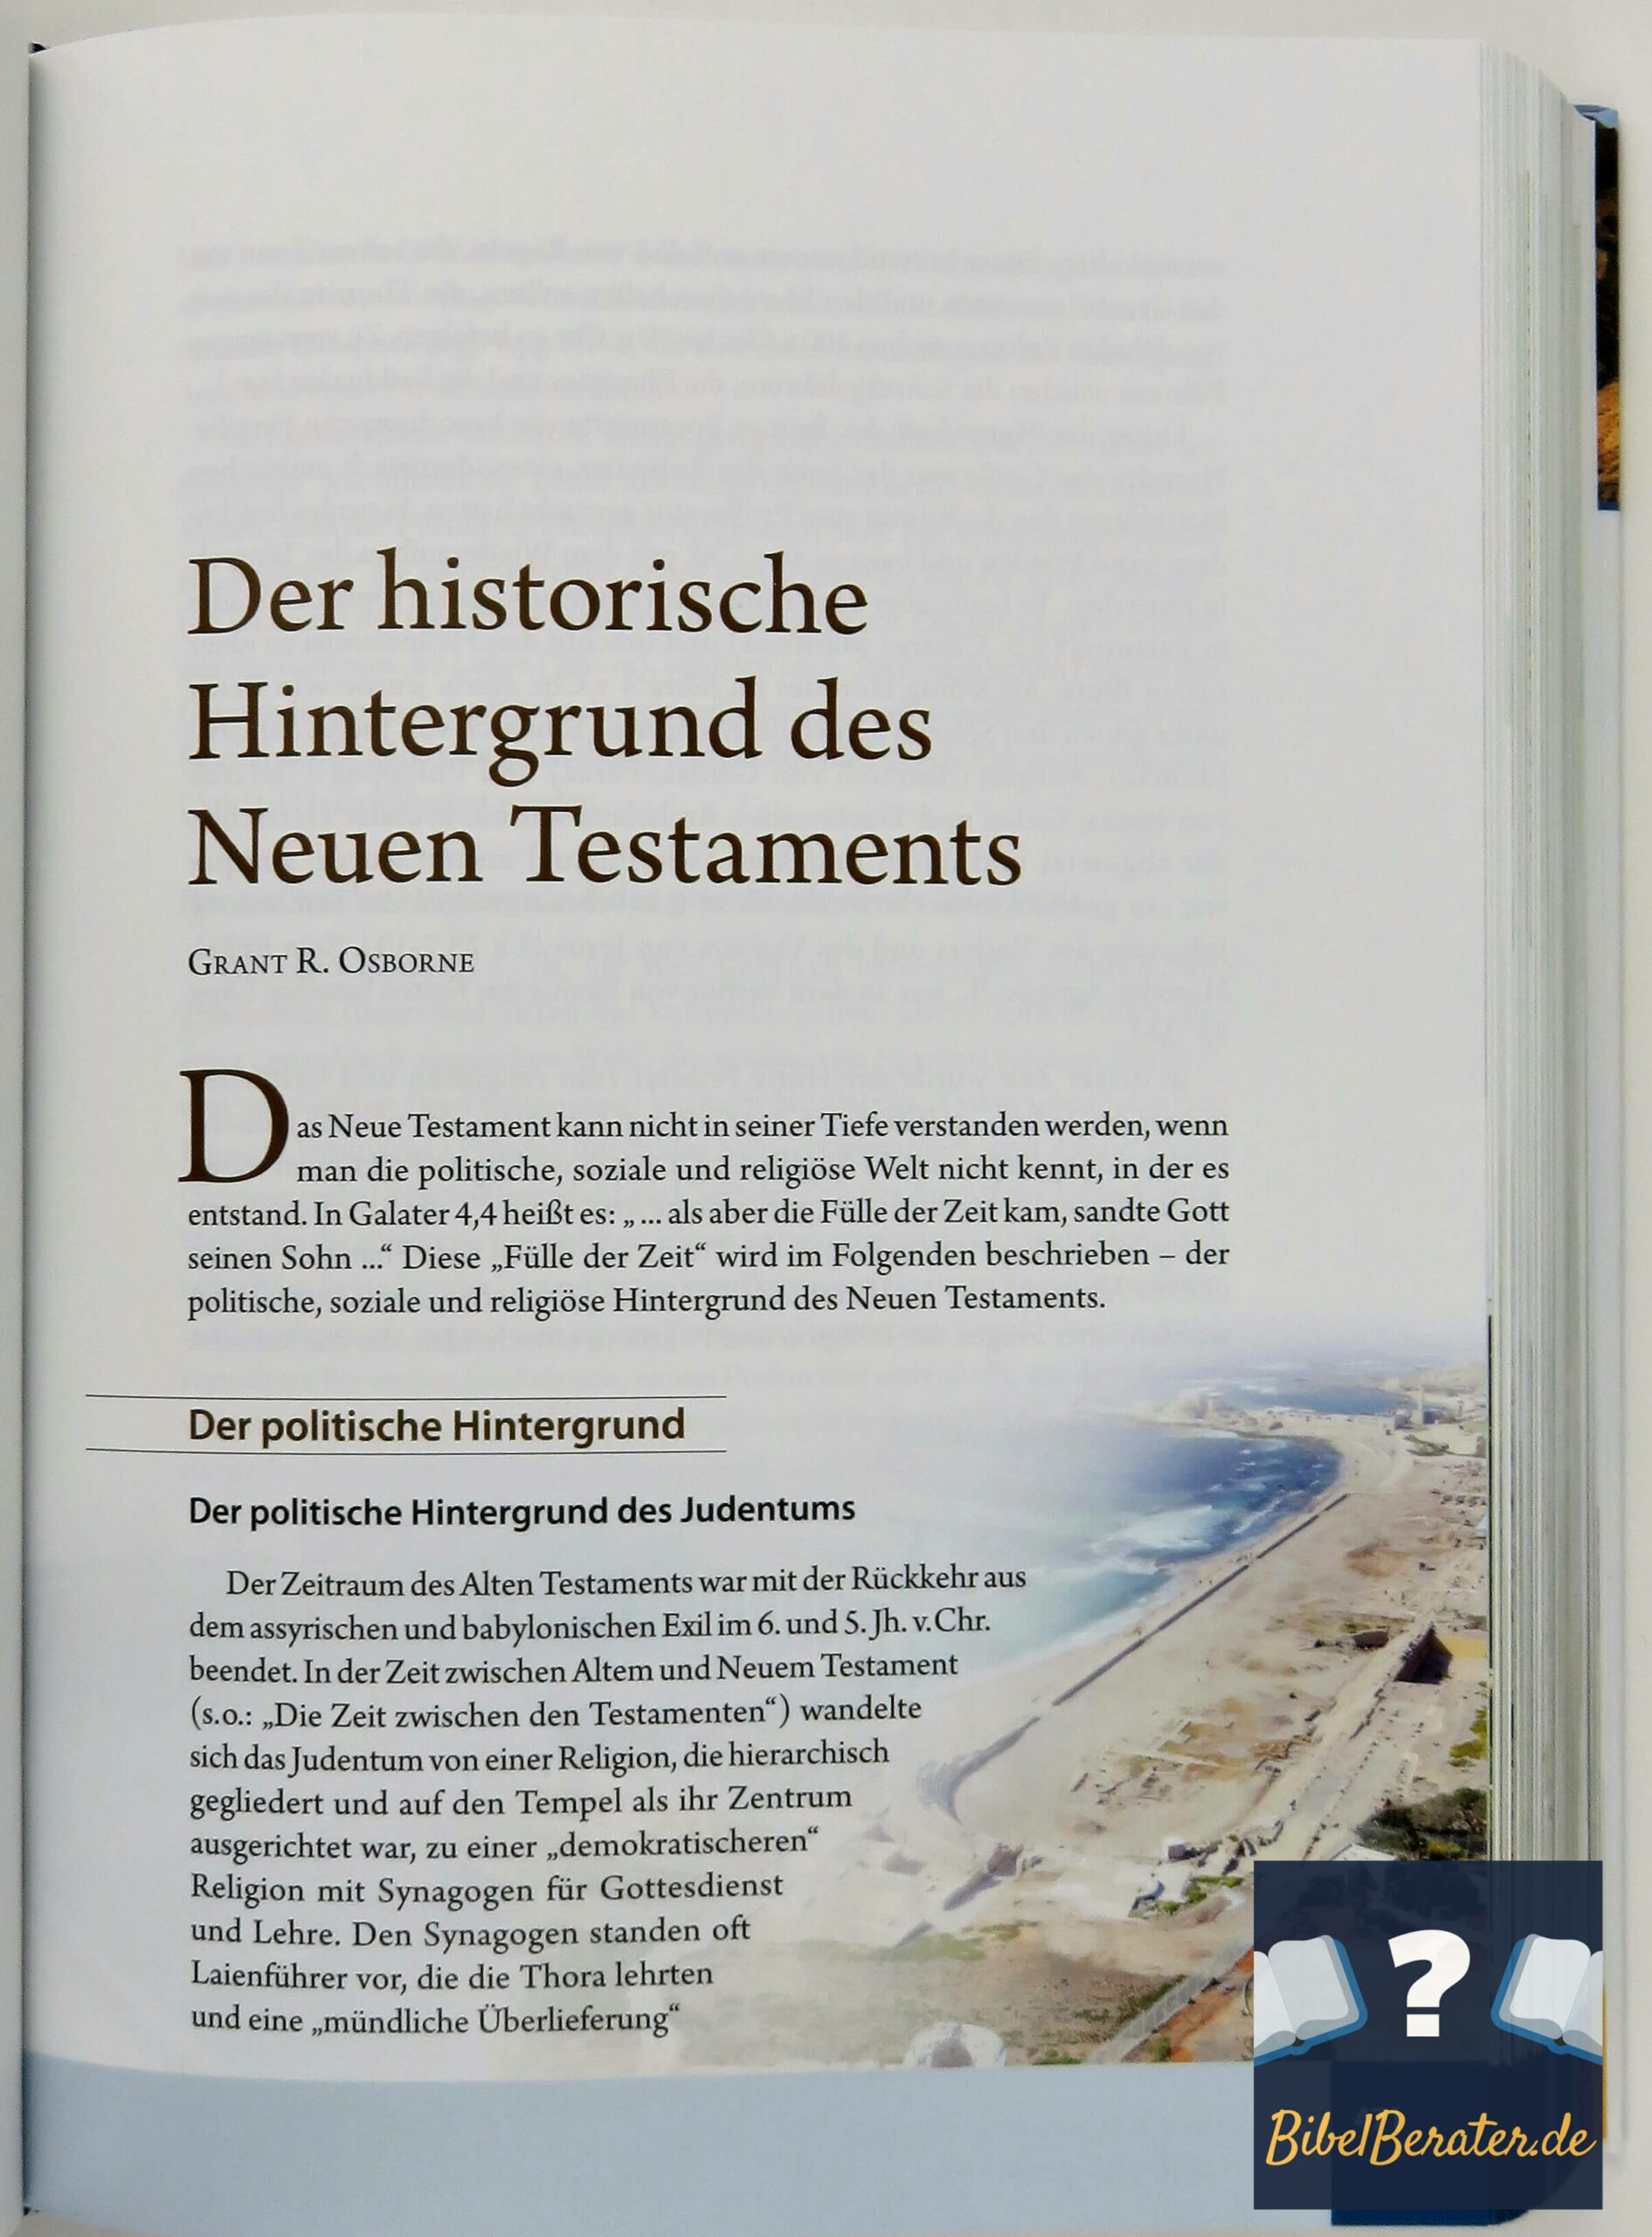 Das illustrierte Handbuch zur Bibel - historischer Hintergrund